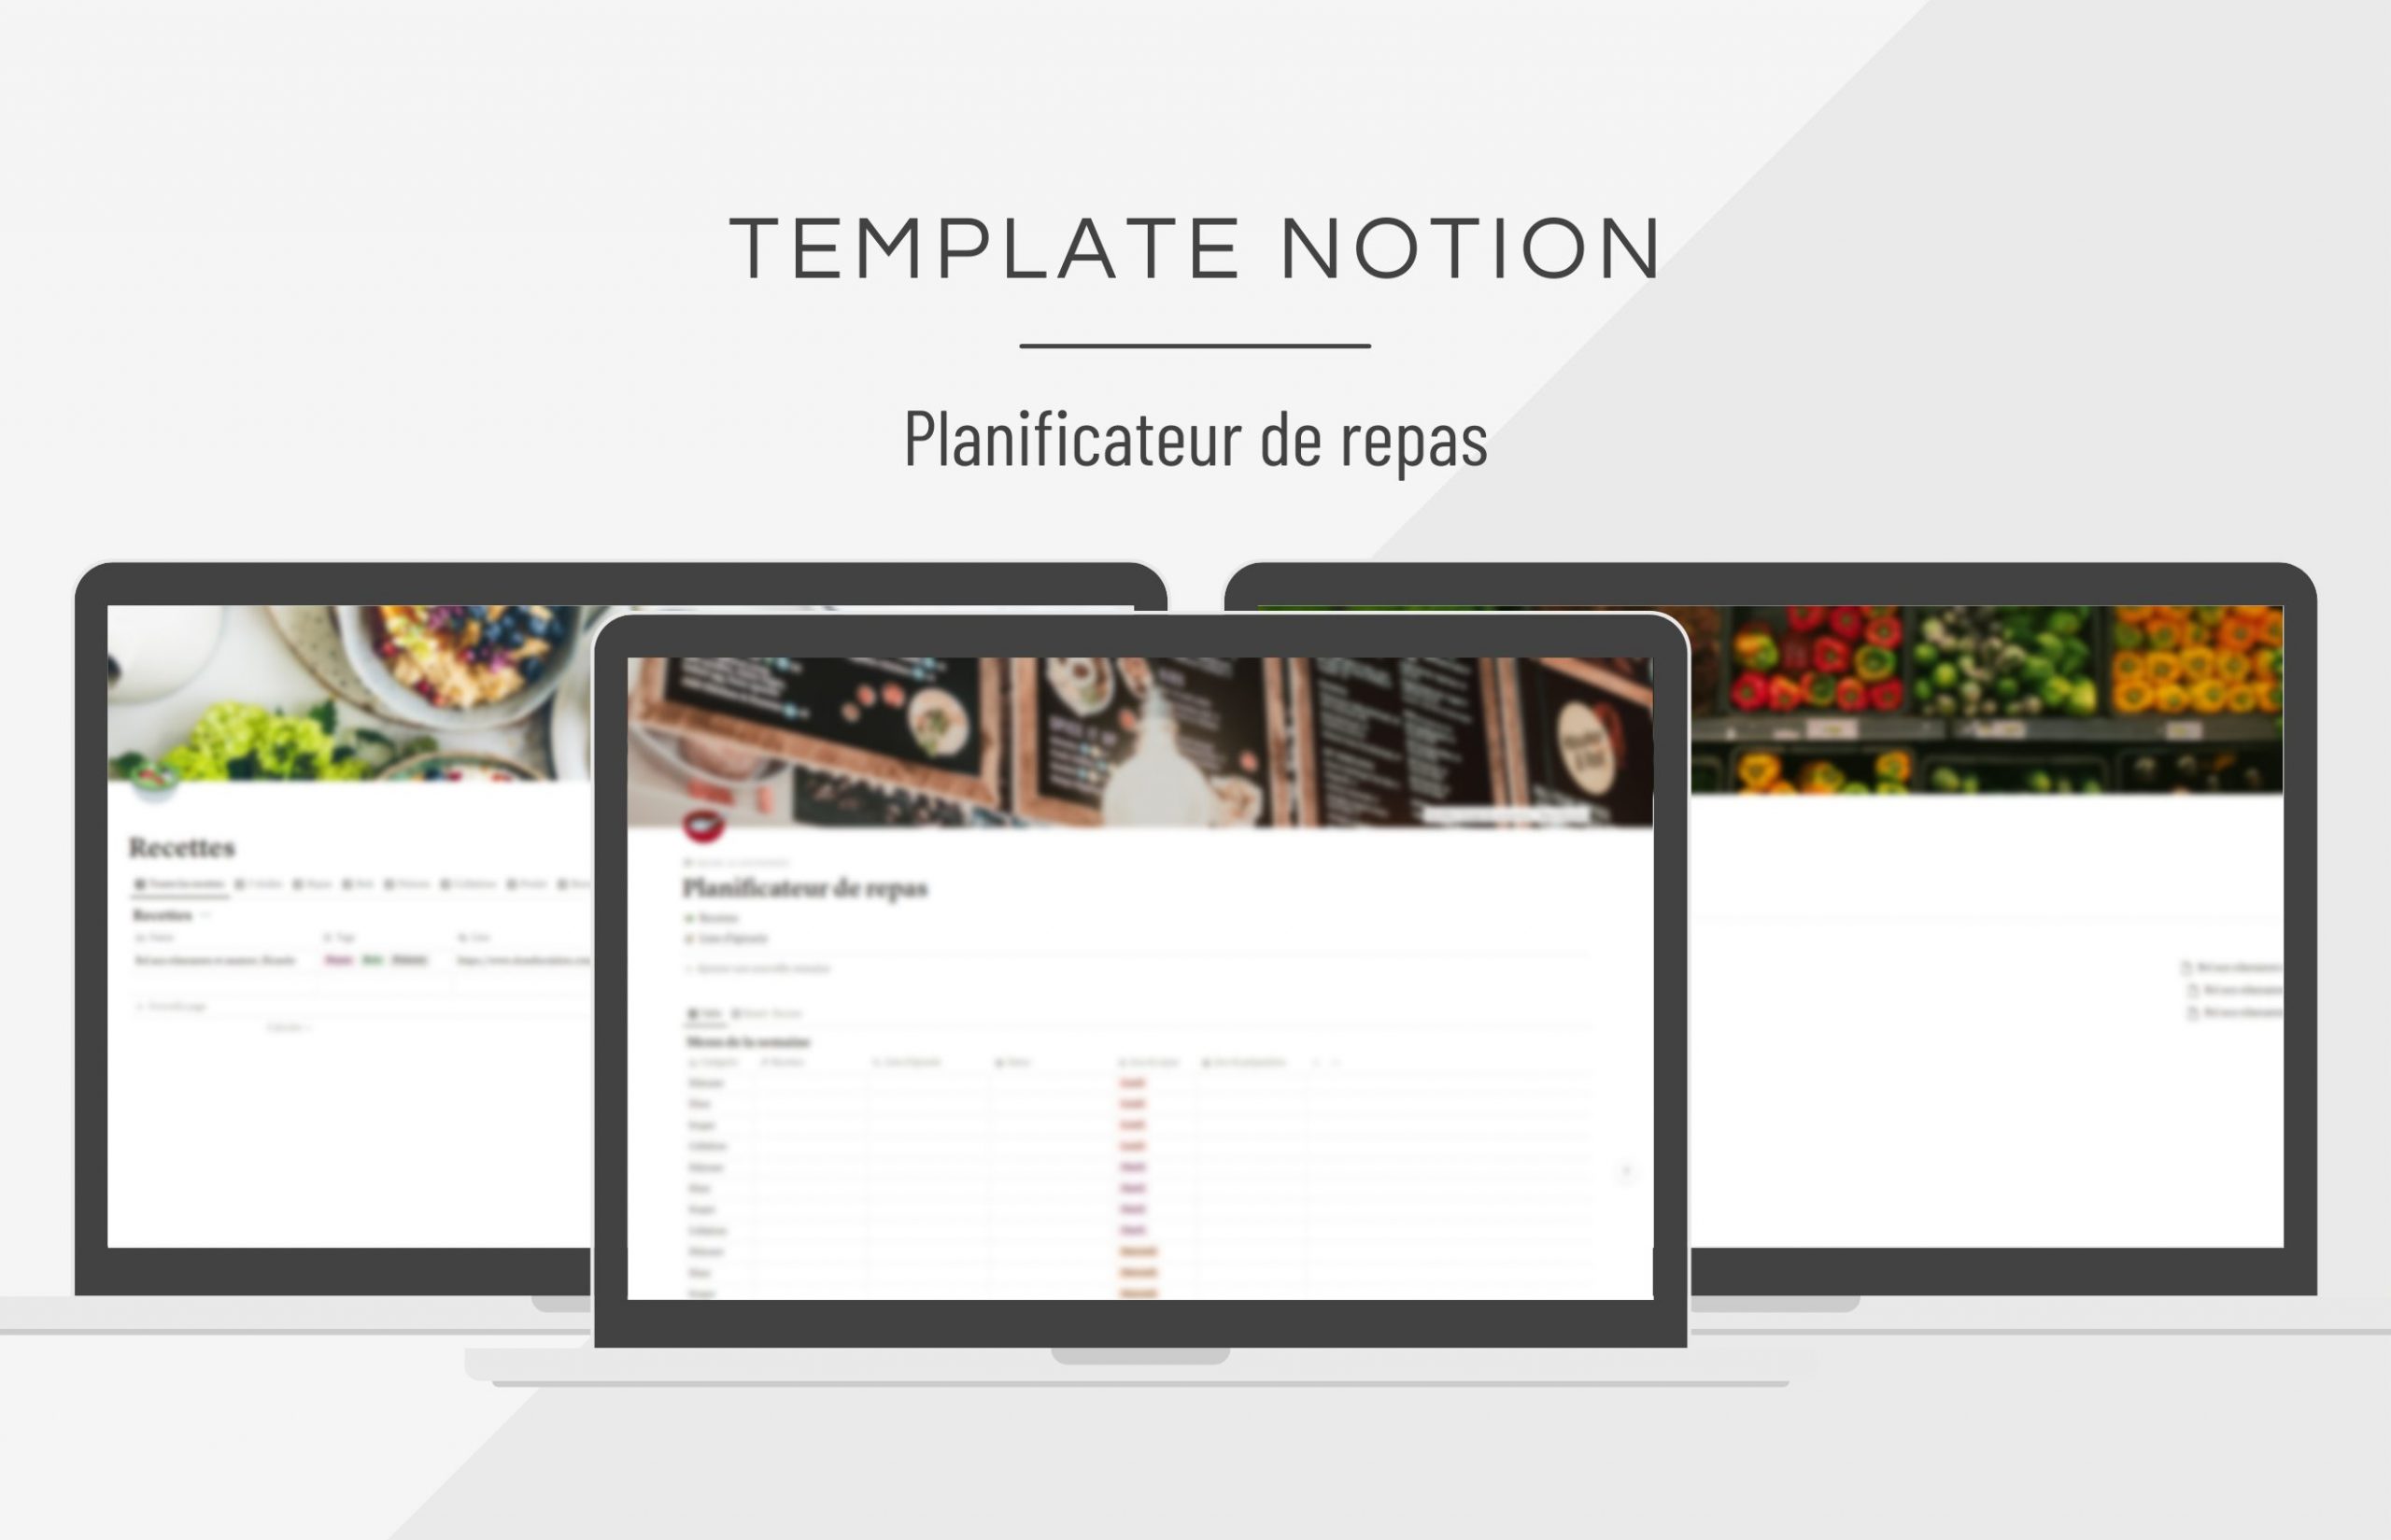 template_notion_planificateur_repas